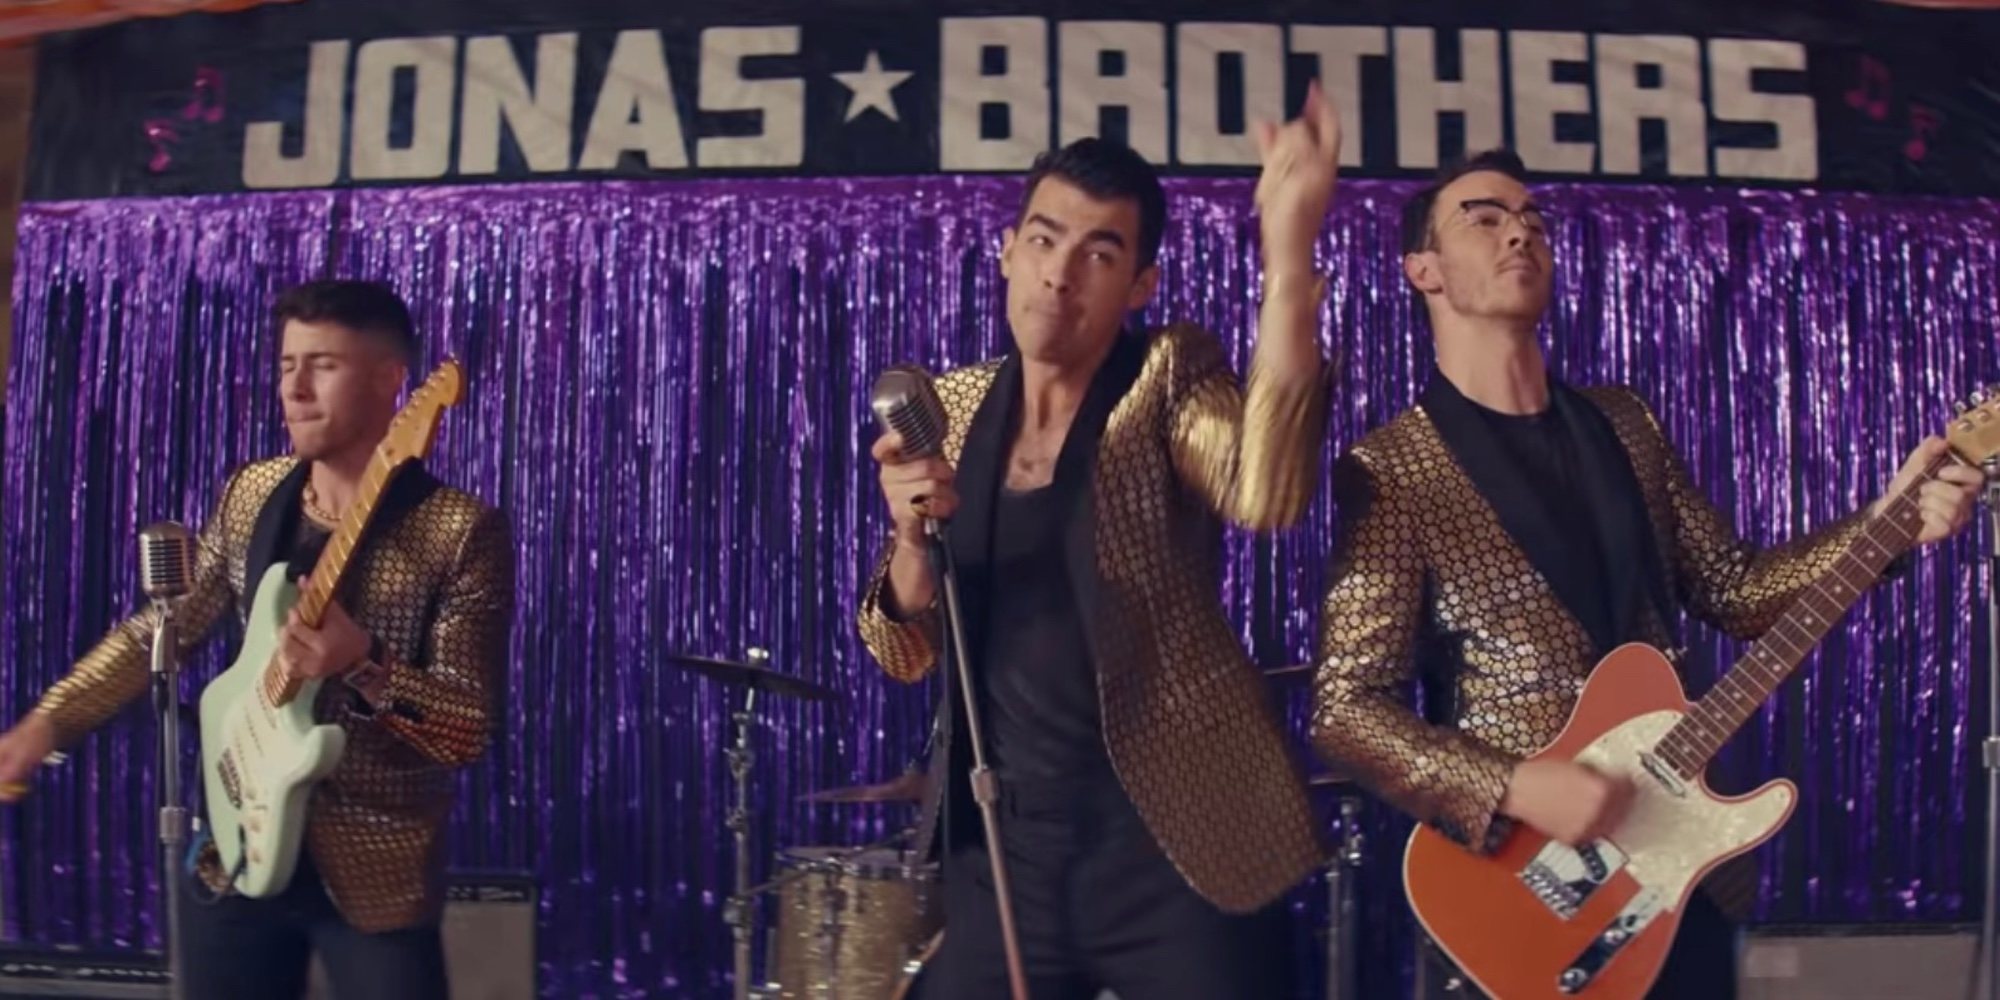 Los Jonas Brothers lo vuelven a hacer: Priyanka, Sophie Turner y Danielle, protagonistas de su nueva canción